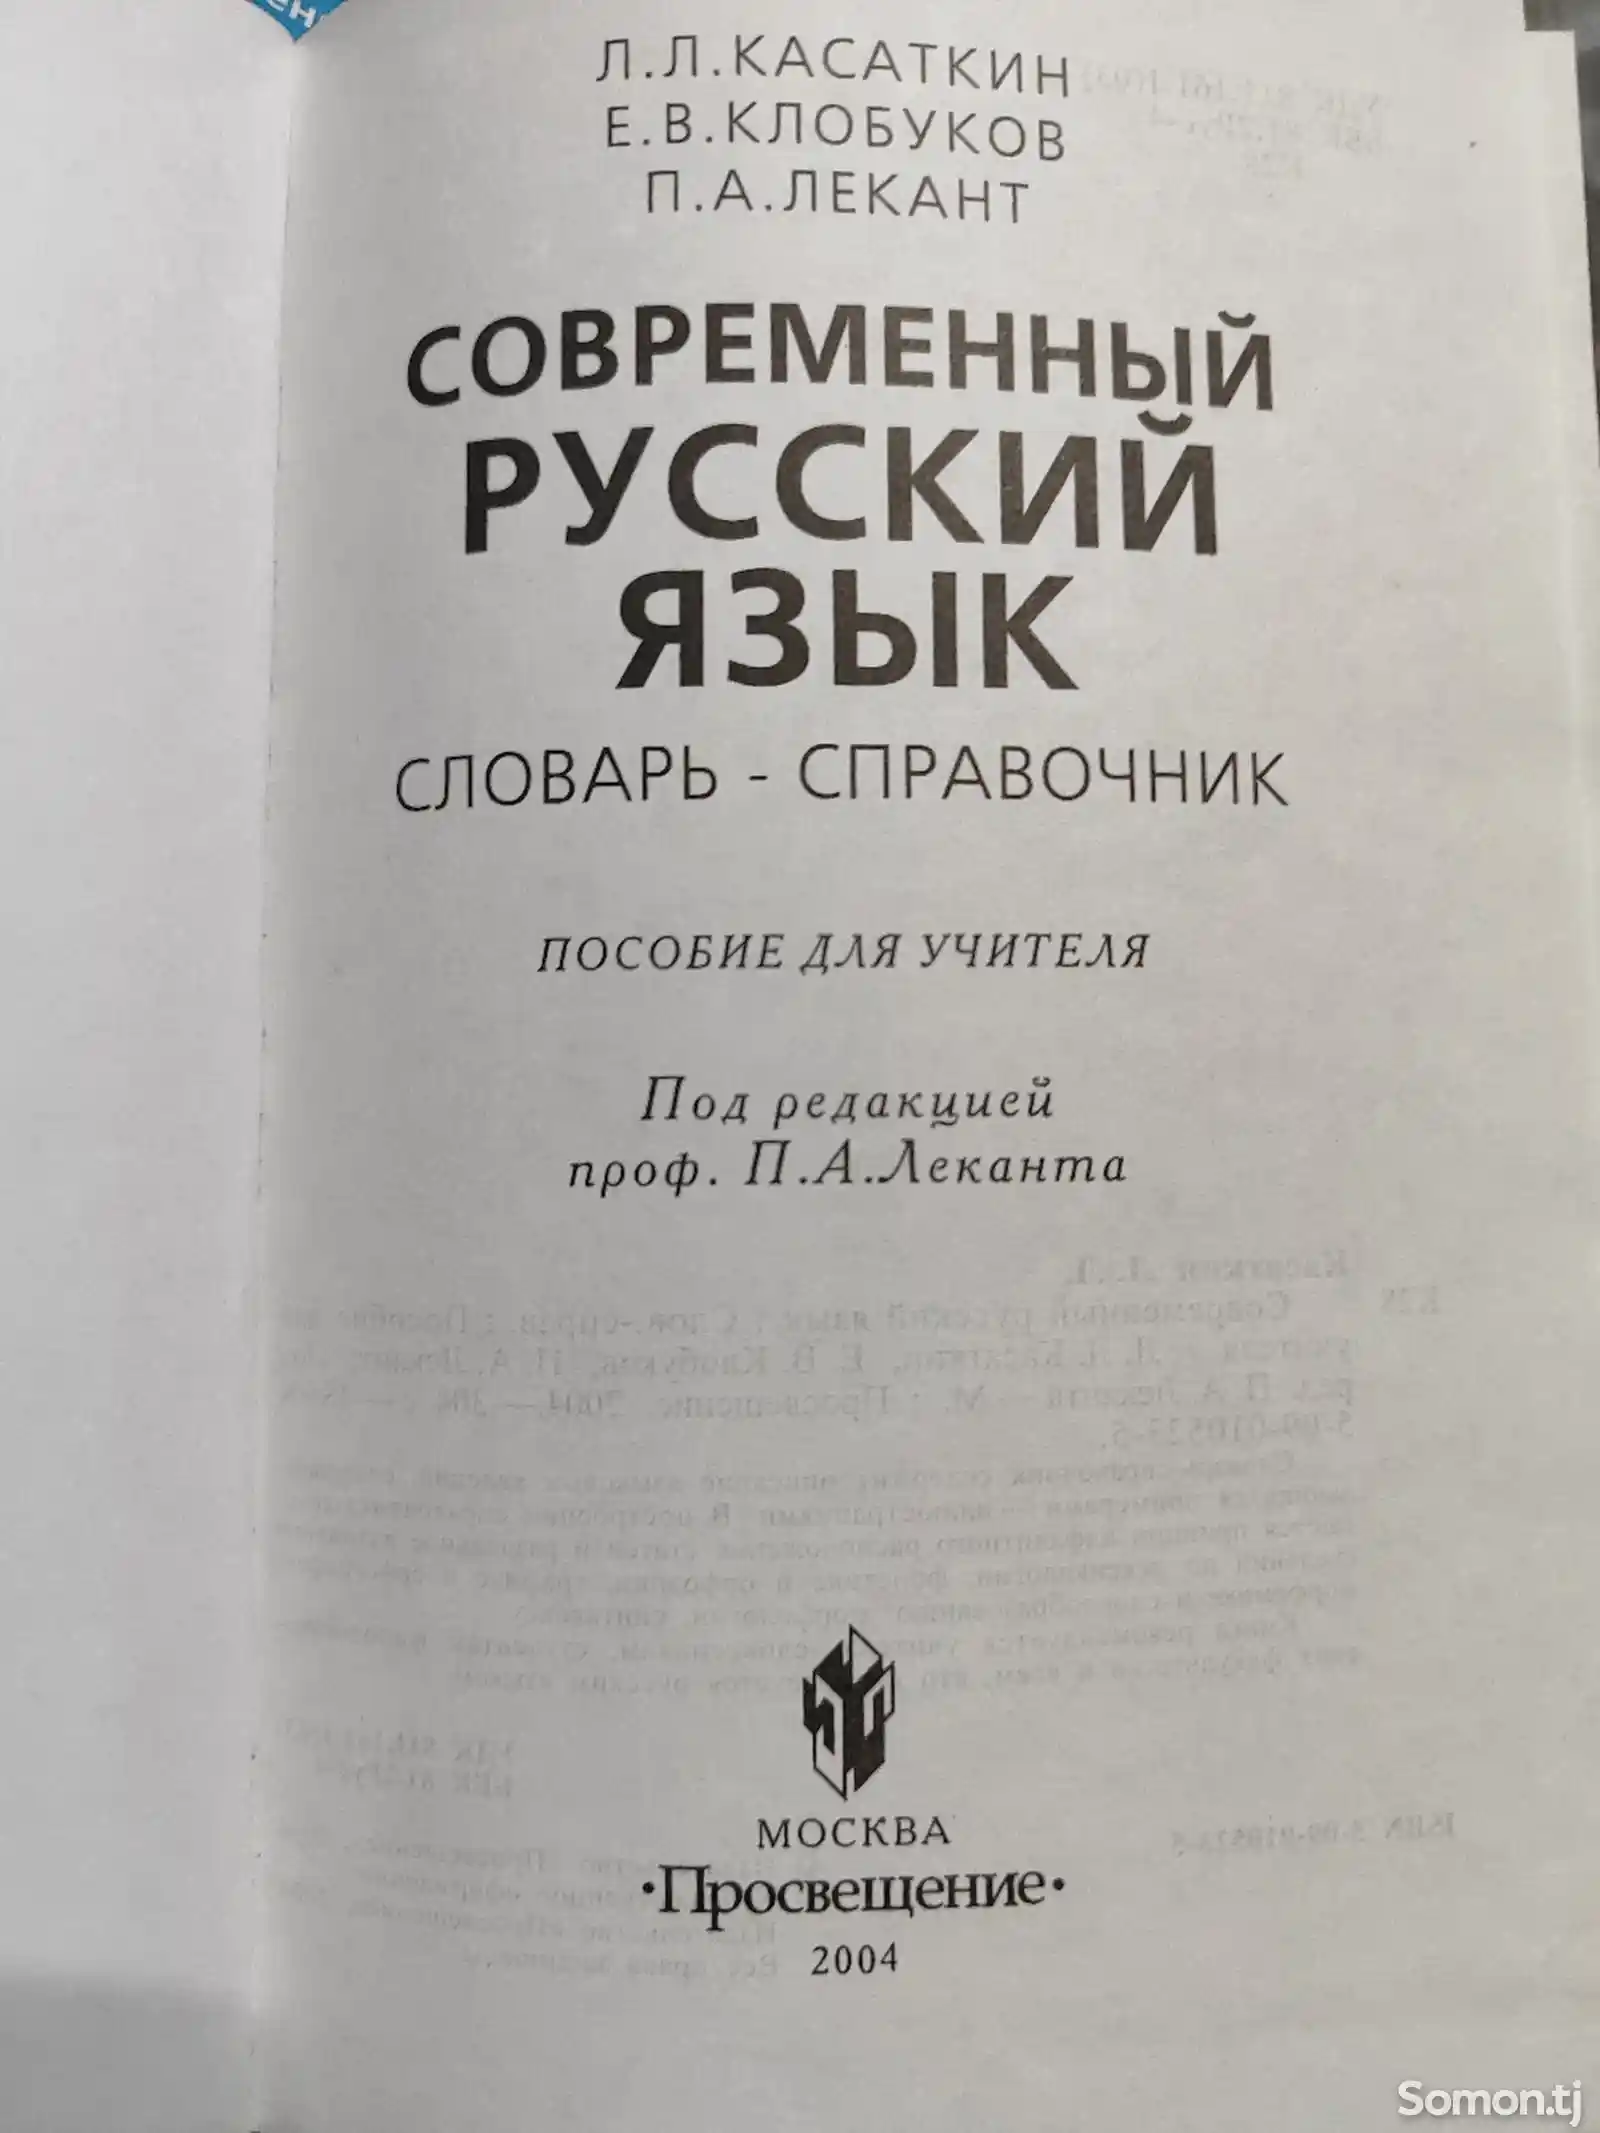 Современный русский язык, словарь - справочник, 2004 год, 302 ст-2